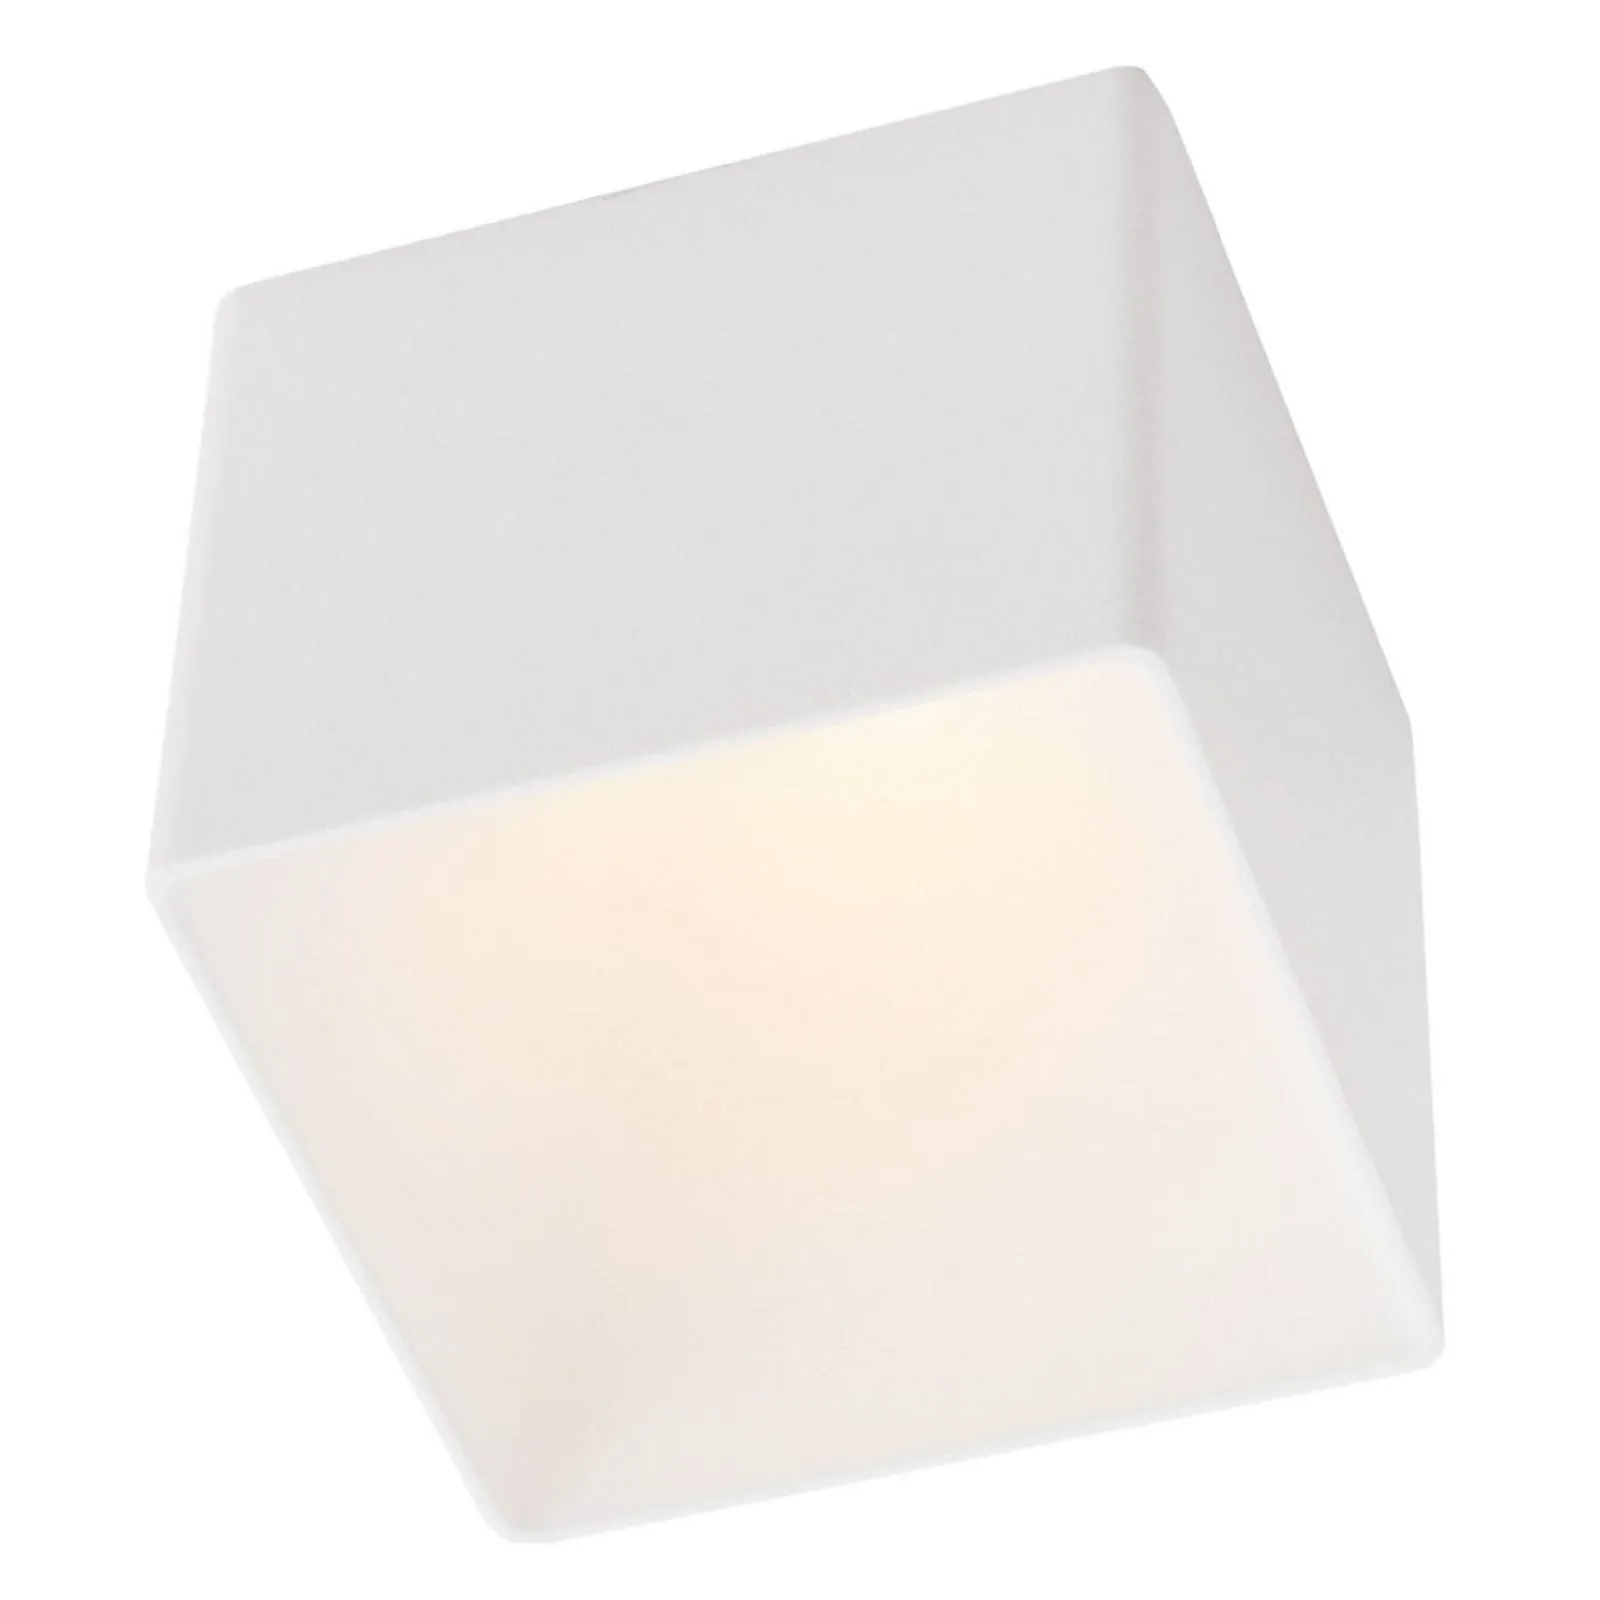 GF design Blocky recessed lamp IP54 white 2,700 K